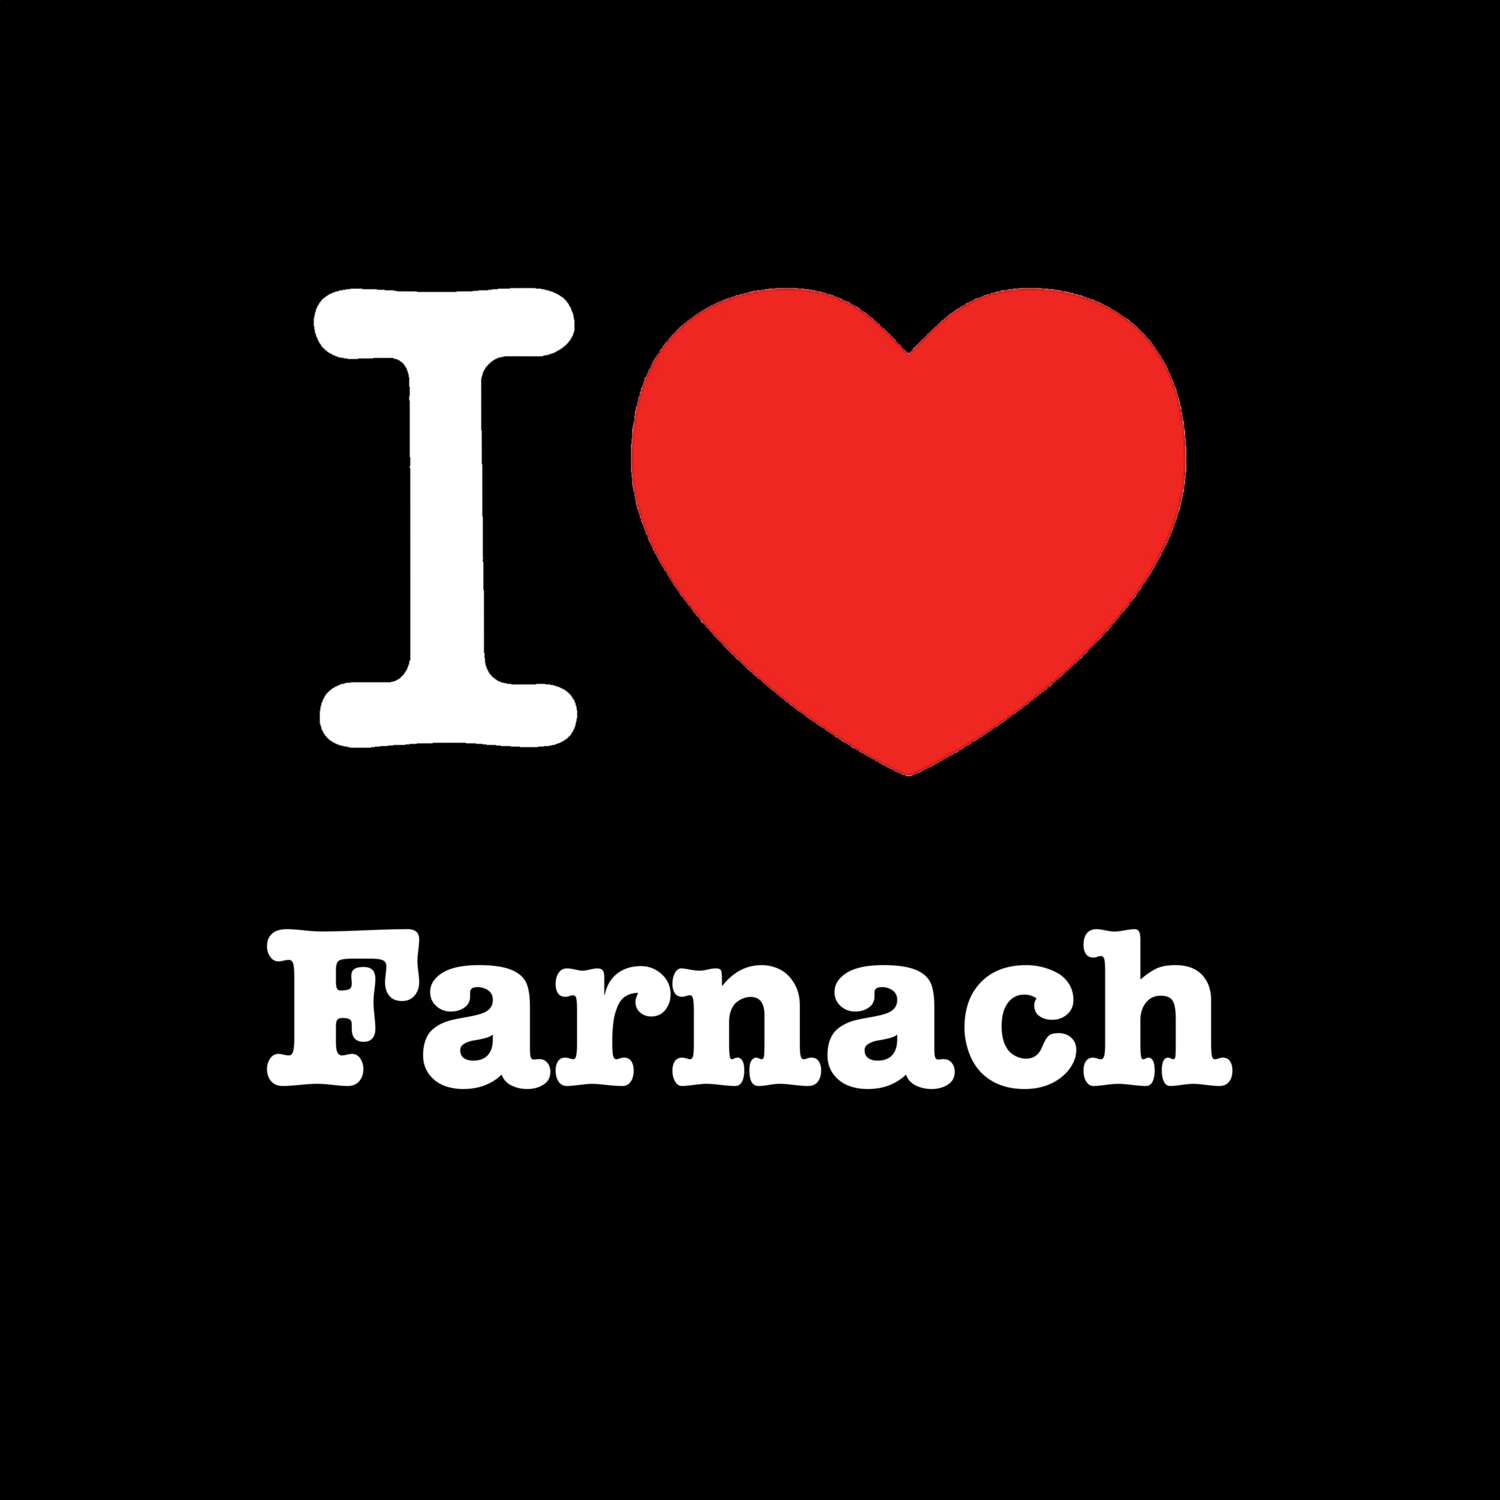 Farnach T-Shirt »I love«